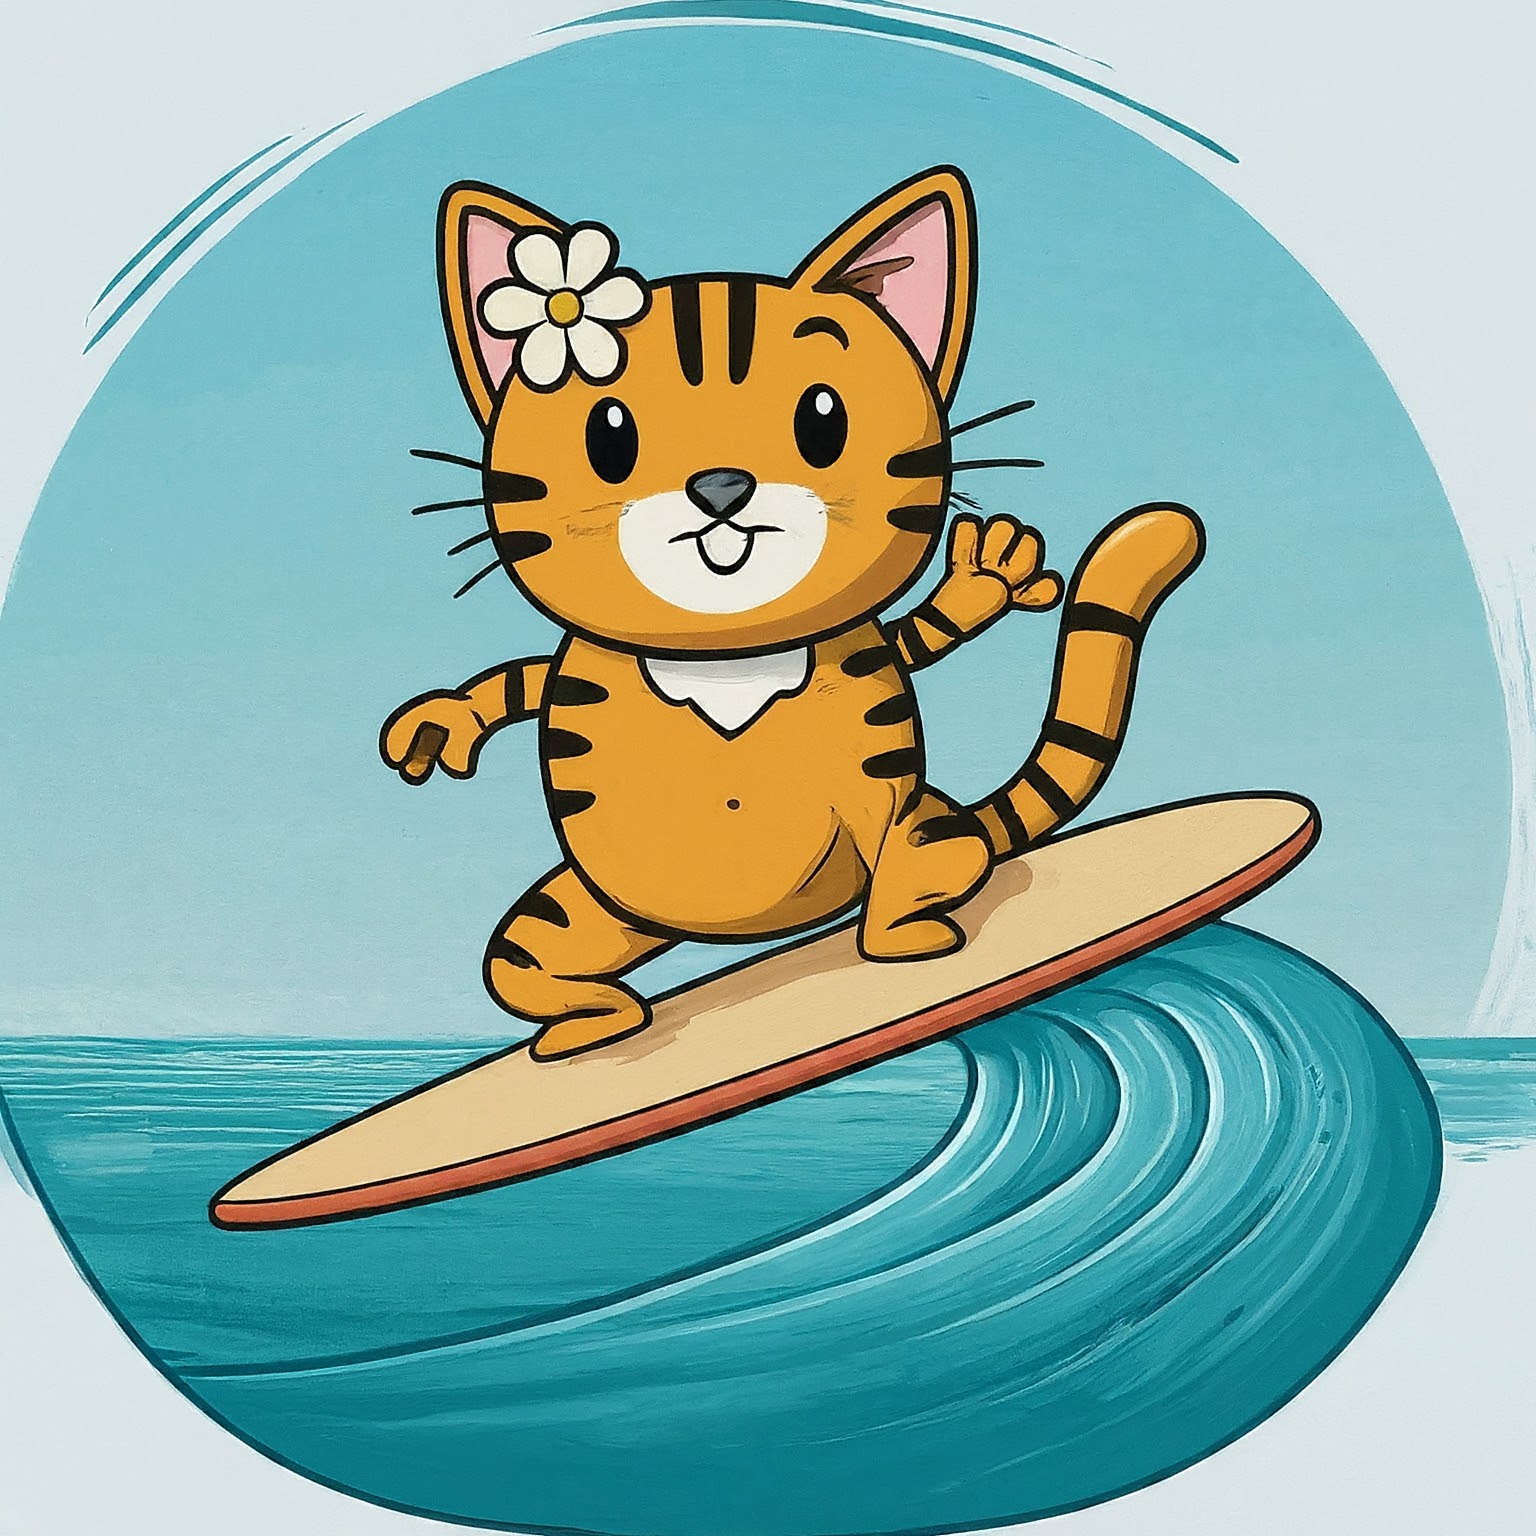 A Cartoon Cat Surfing On A Surfboard.